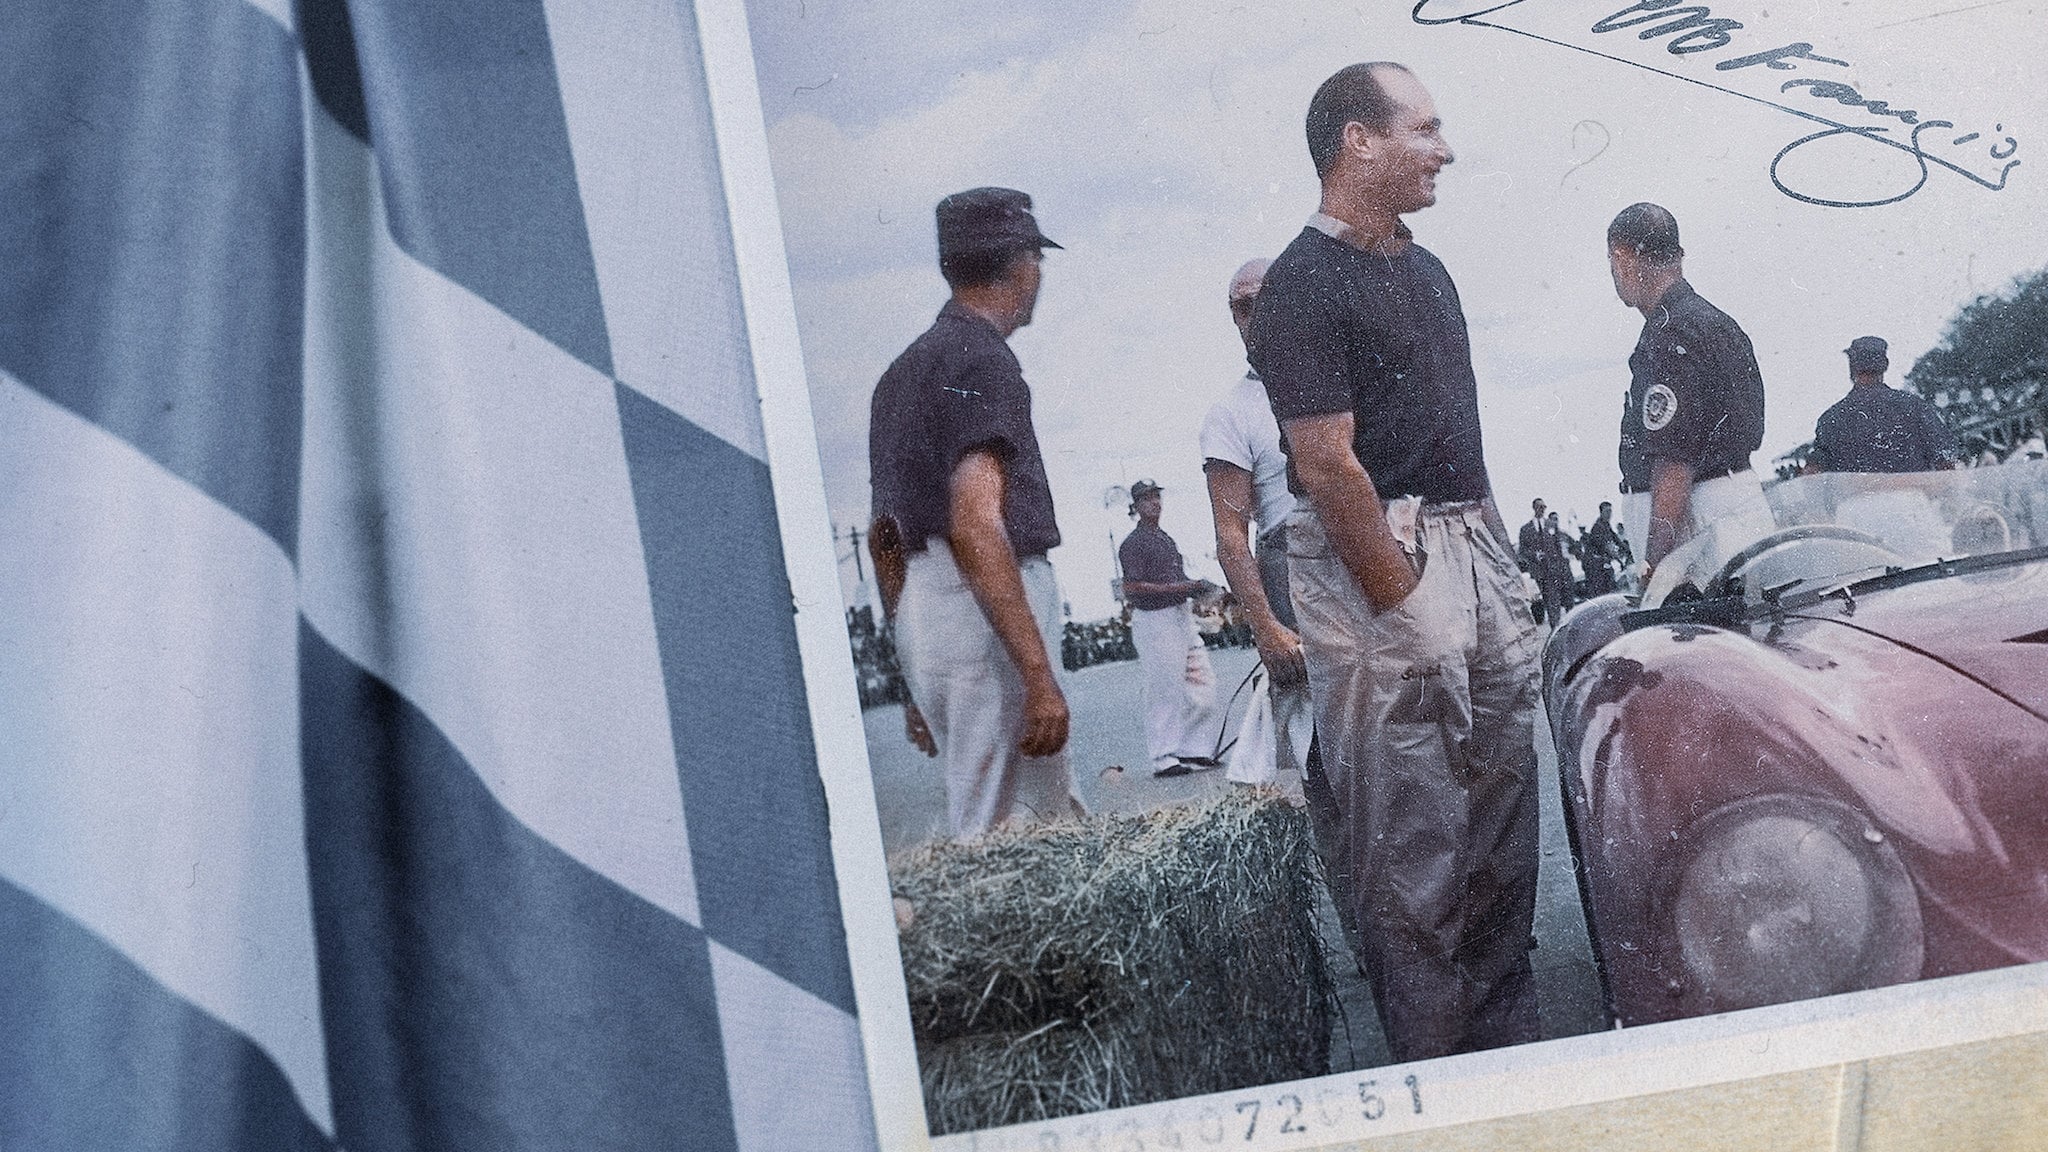 Fangio: człowiek, który poskromił maszyny